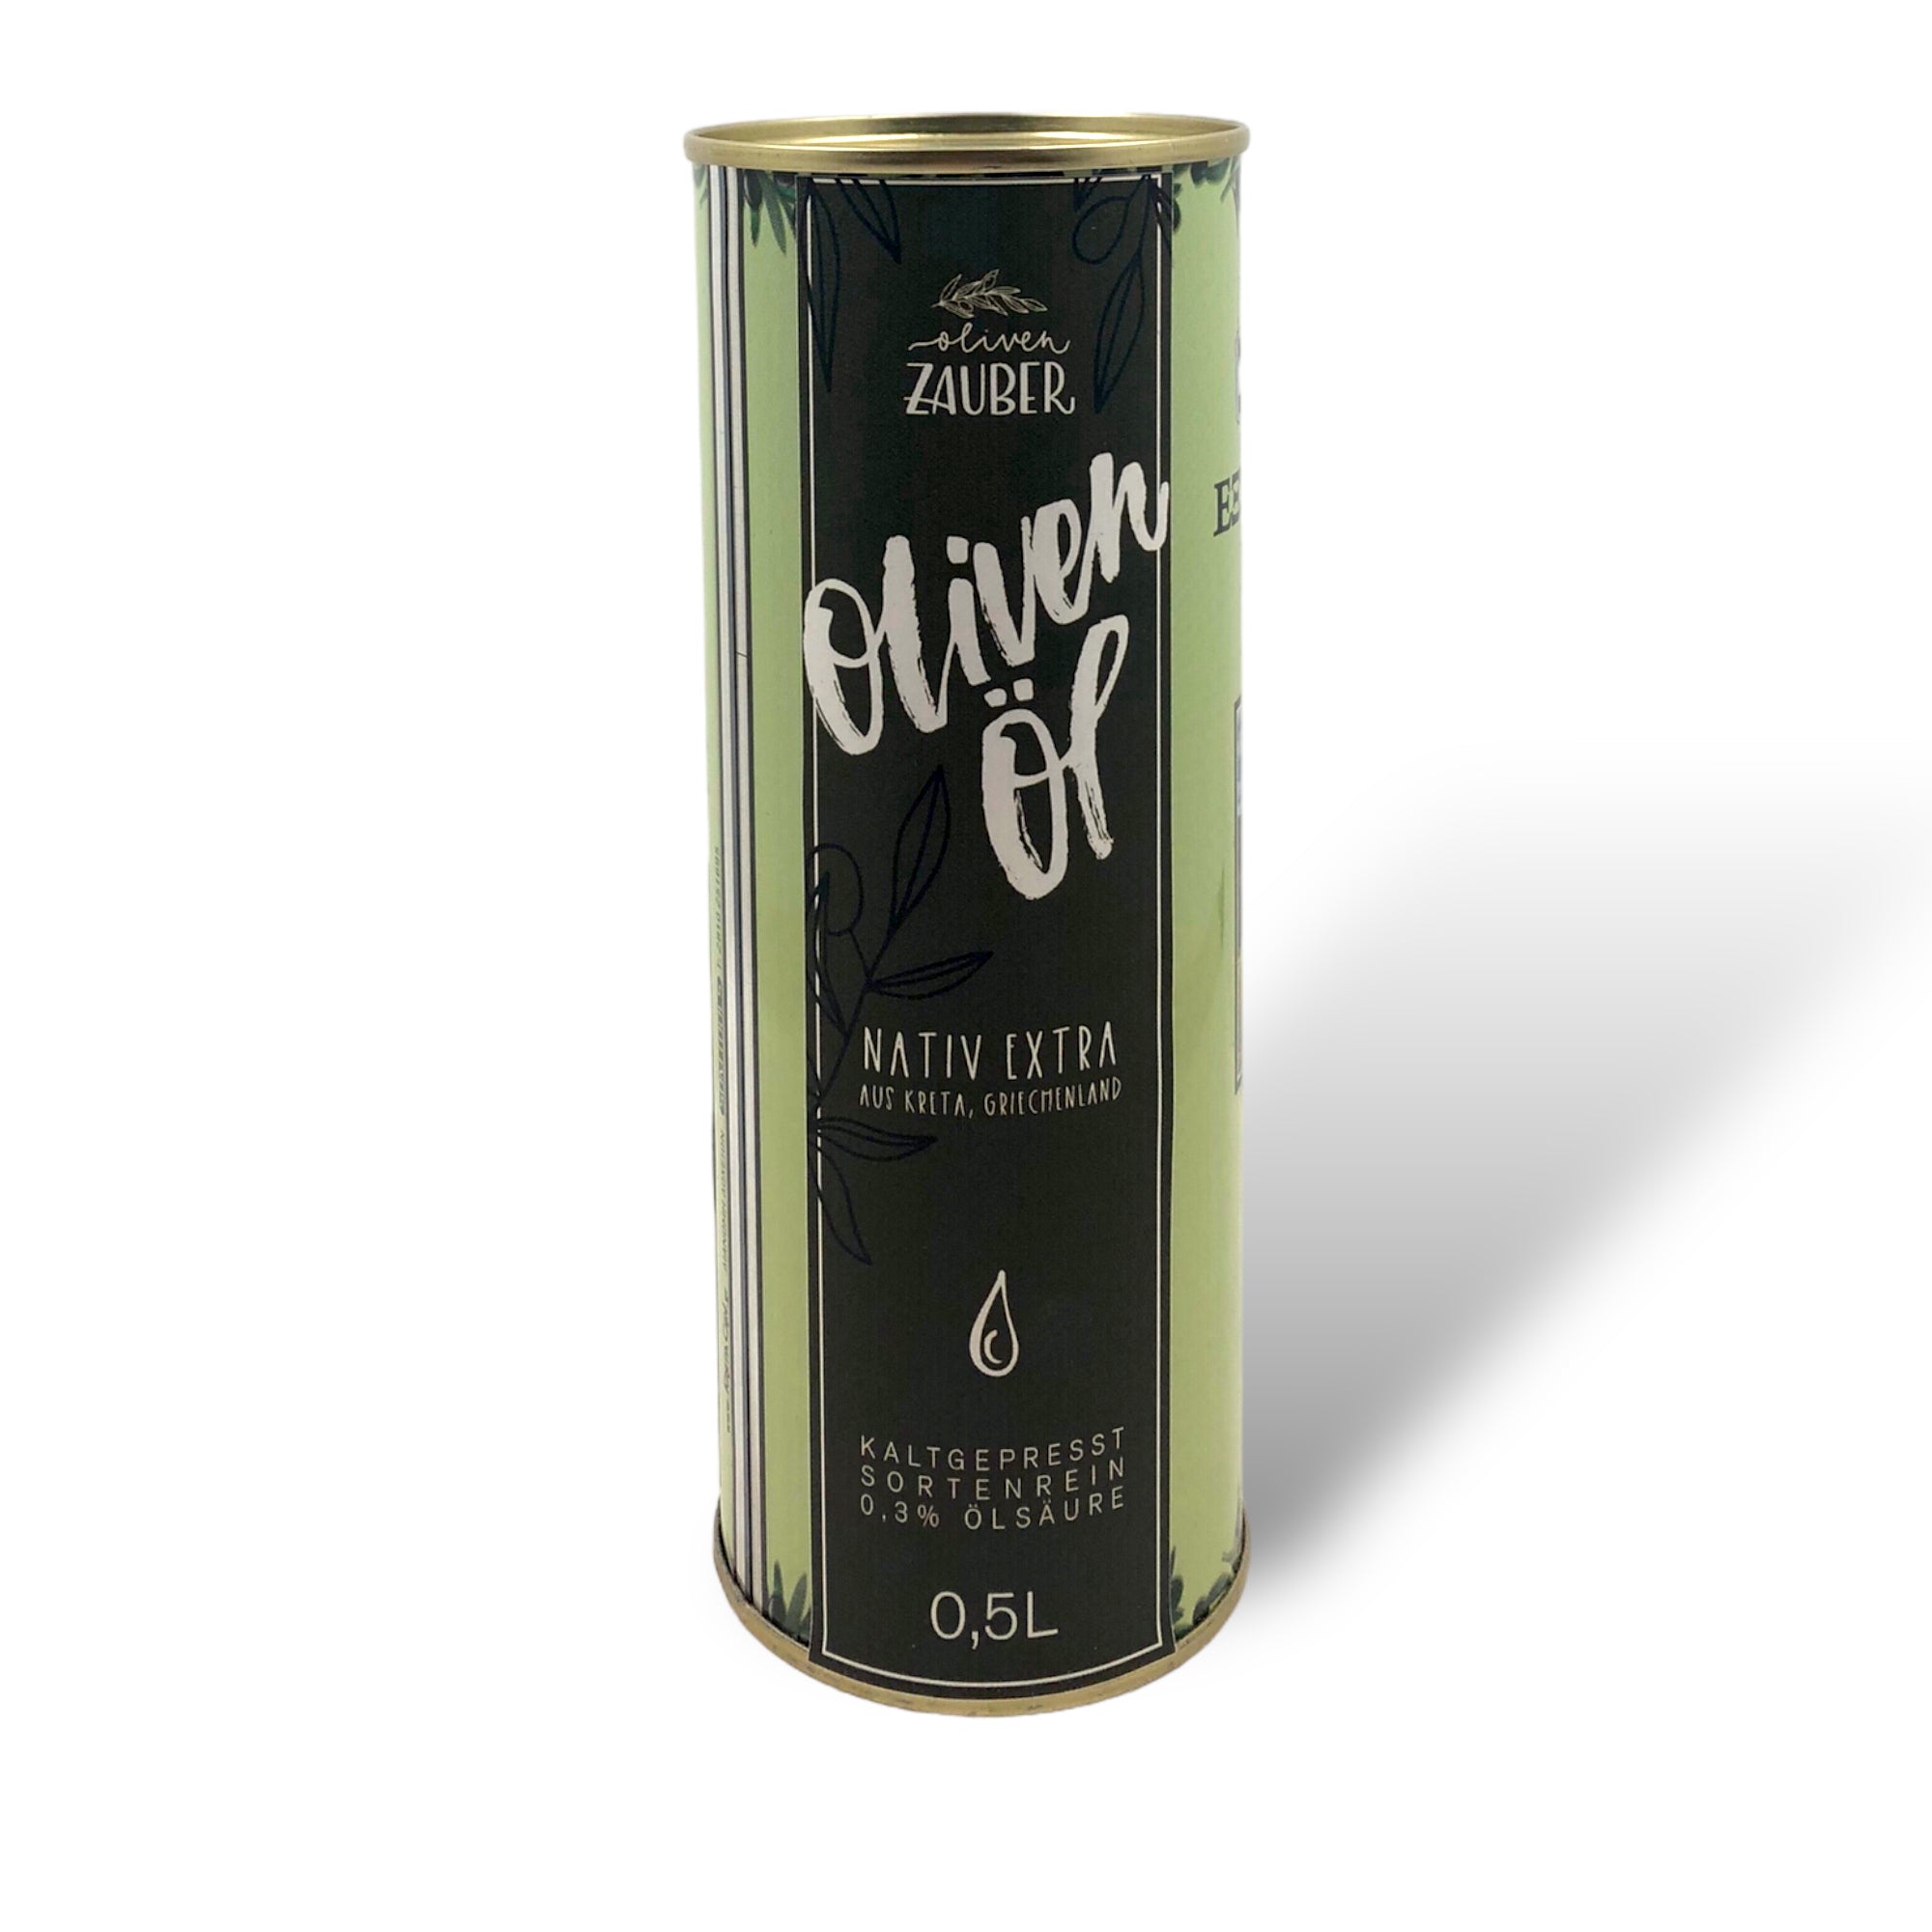 Griechisches Olivenöl nativ extra aus Kreta – 500ml Dose - OlivenZauber - Olivenöl neu erleben